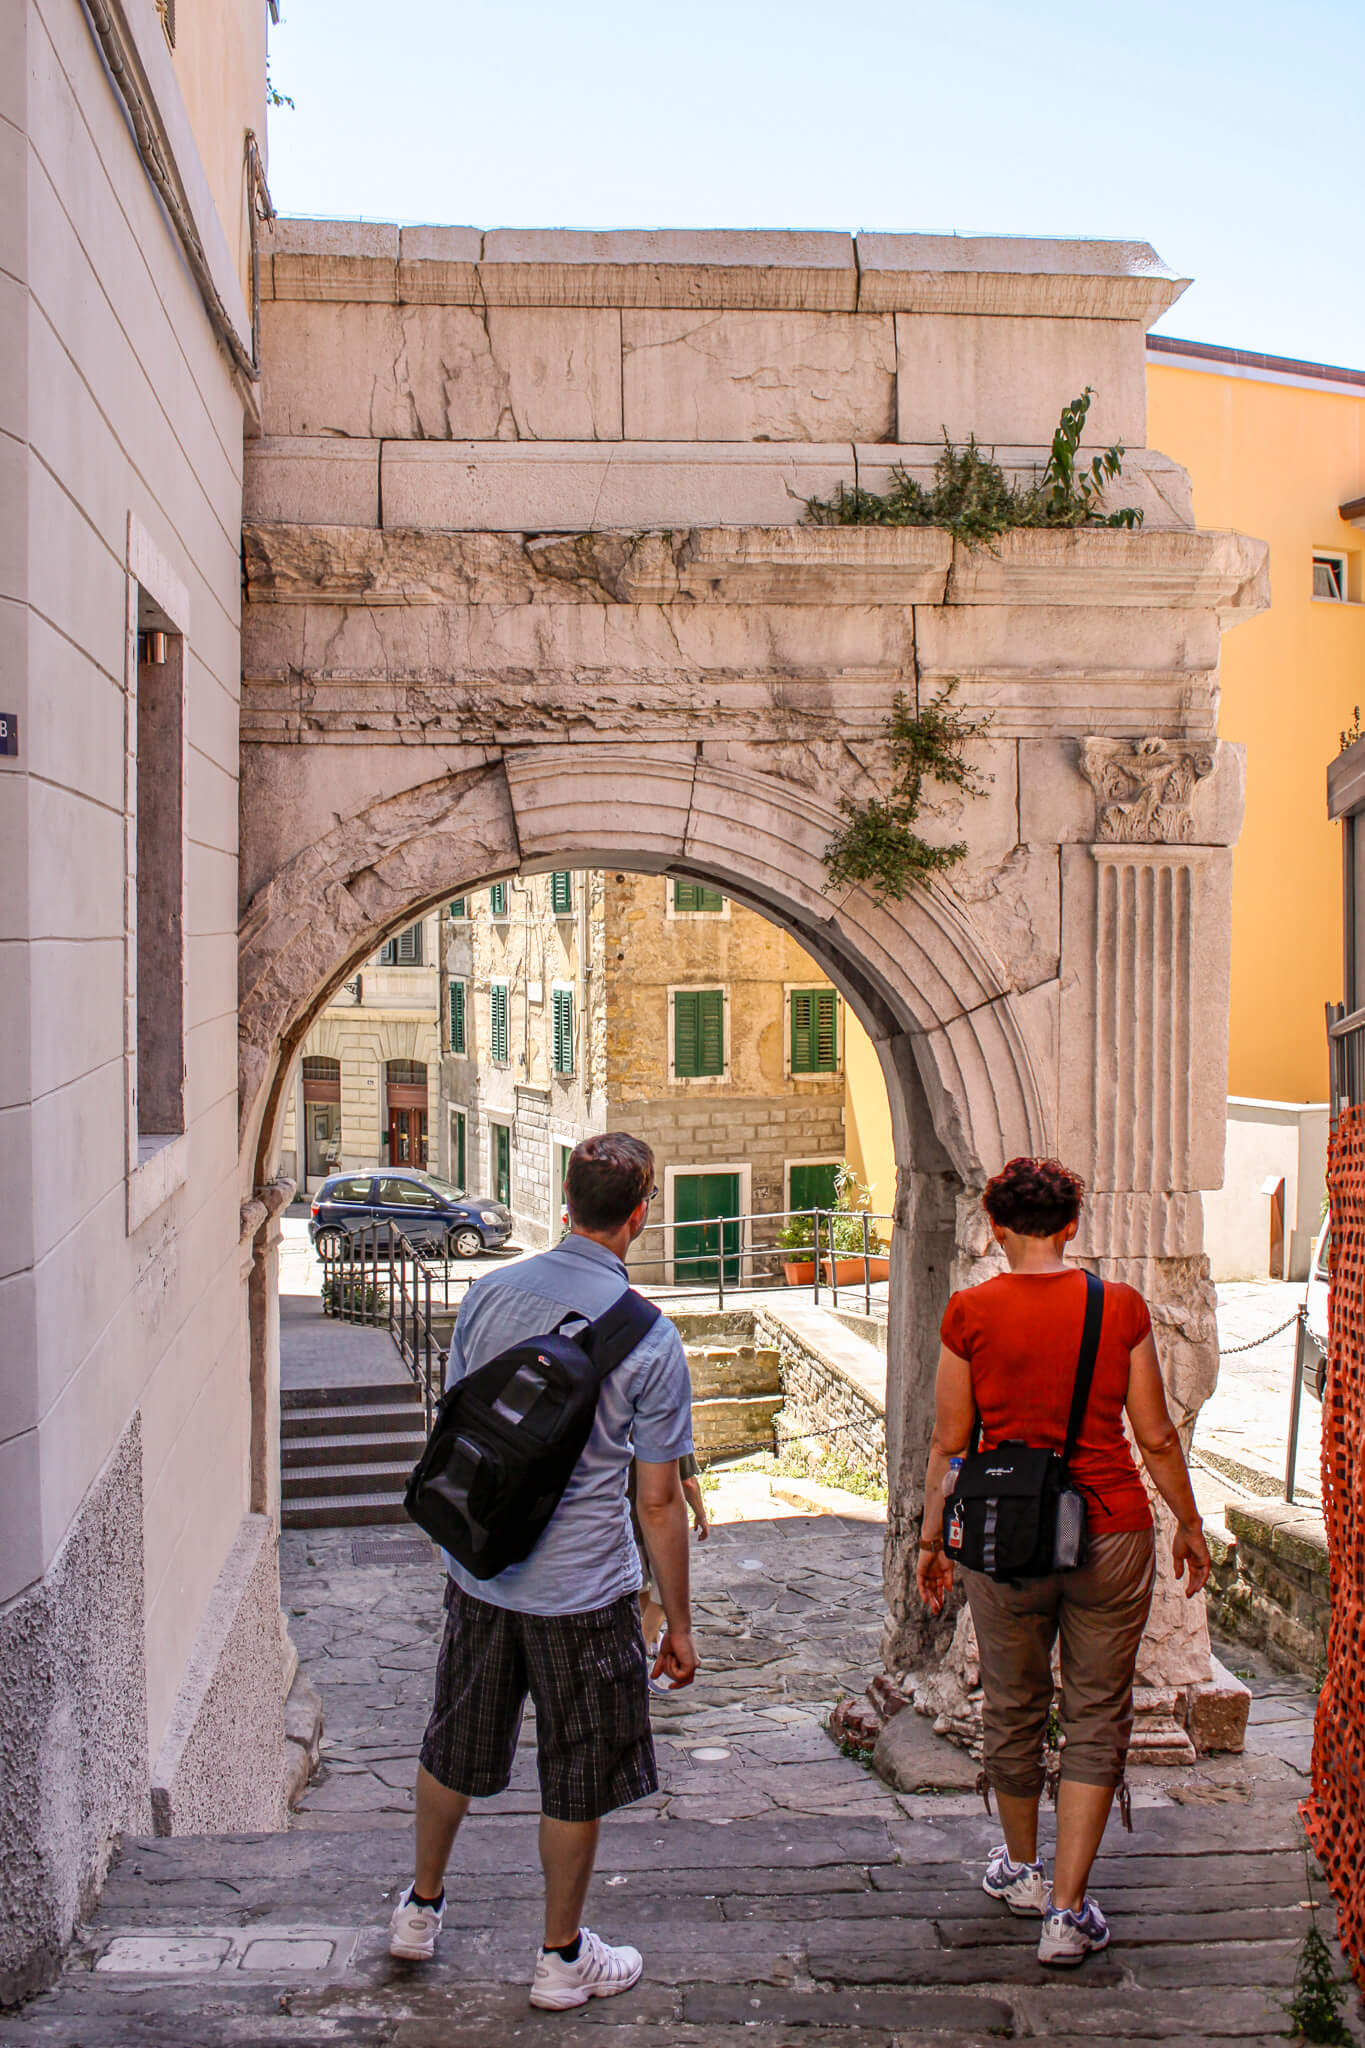 Arco di Riccardo, an ancient Roman triumphal arch in Trieste